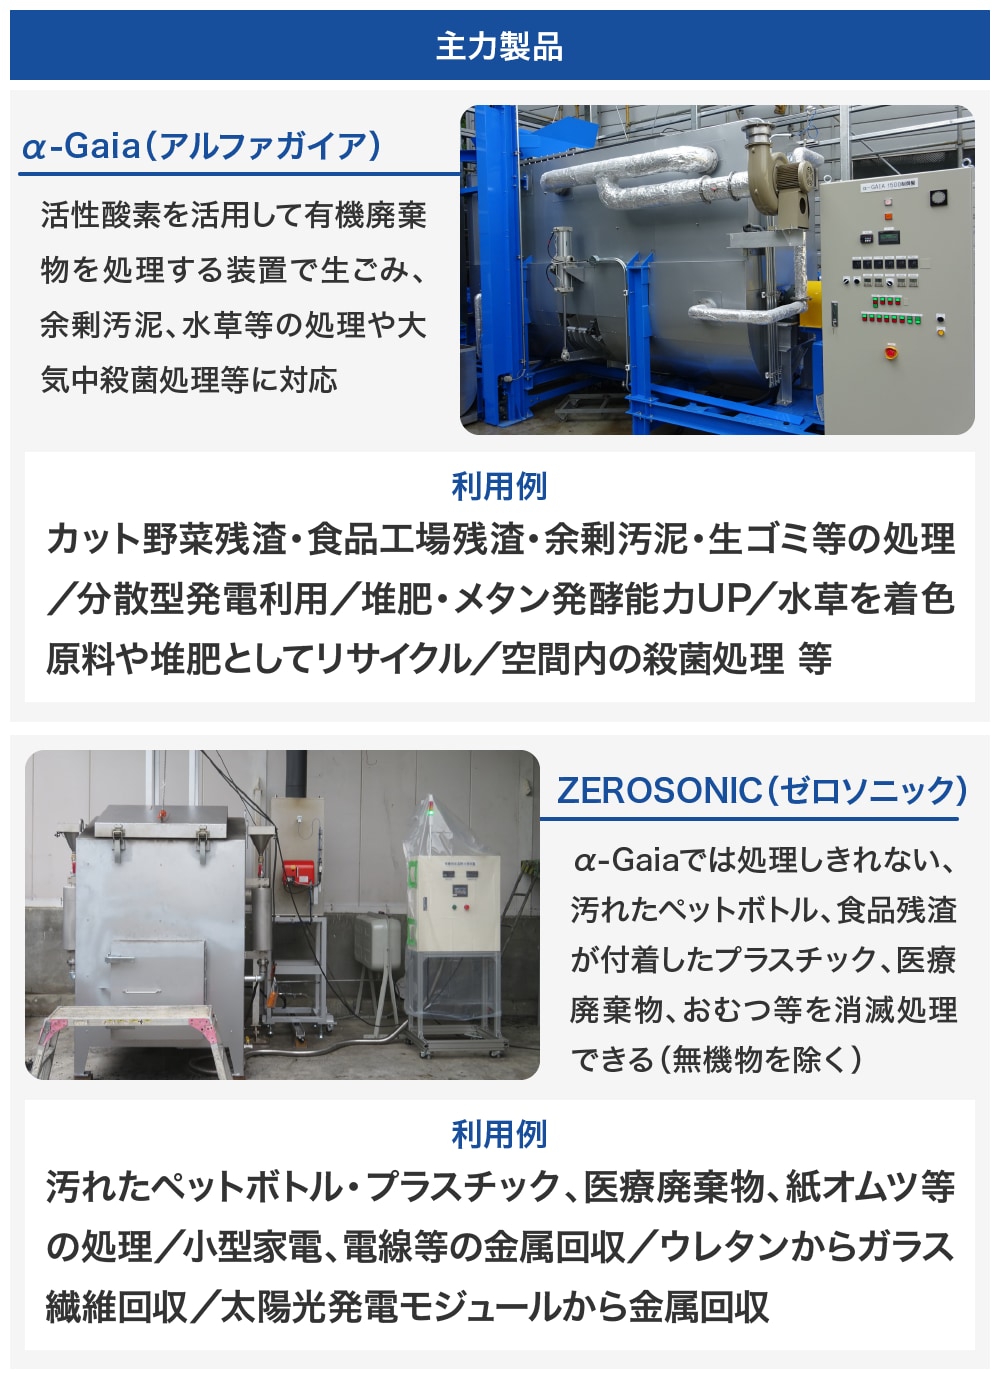 α-Gaia（有機物活性酸素処理装置）とZEROSONIC（個体廃棄物消滅処理装置）